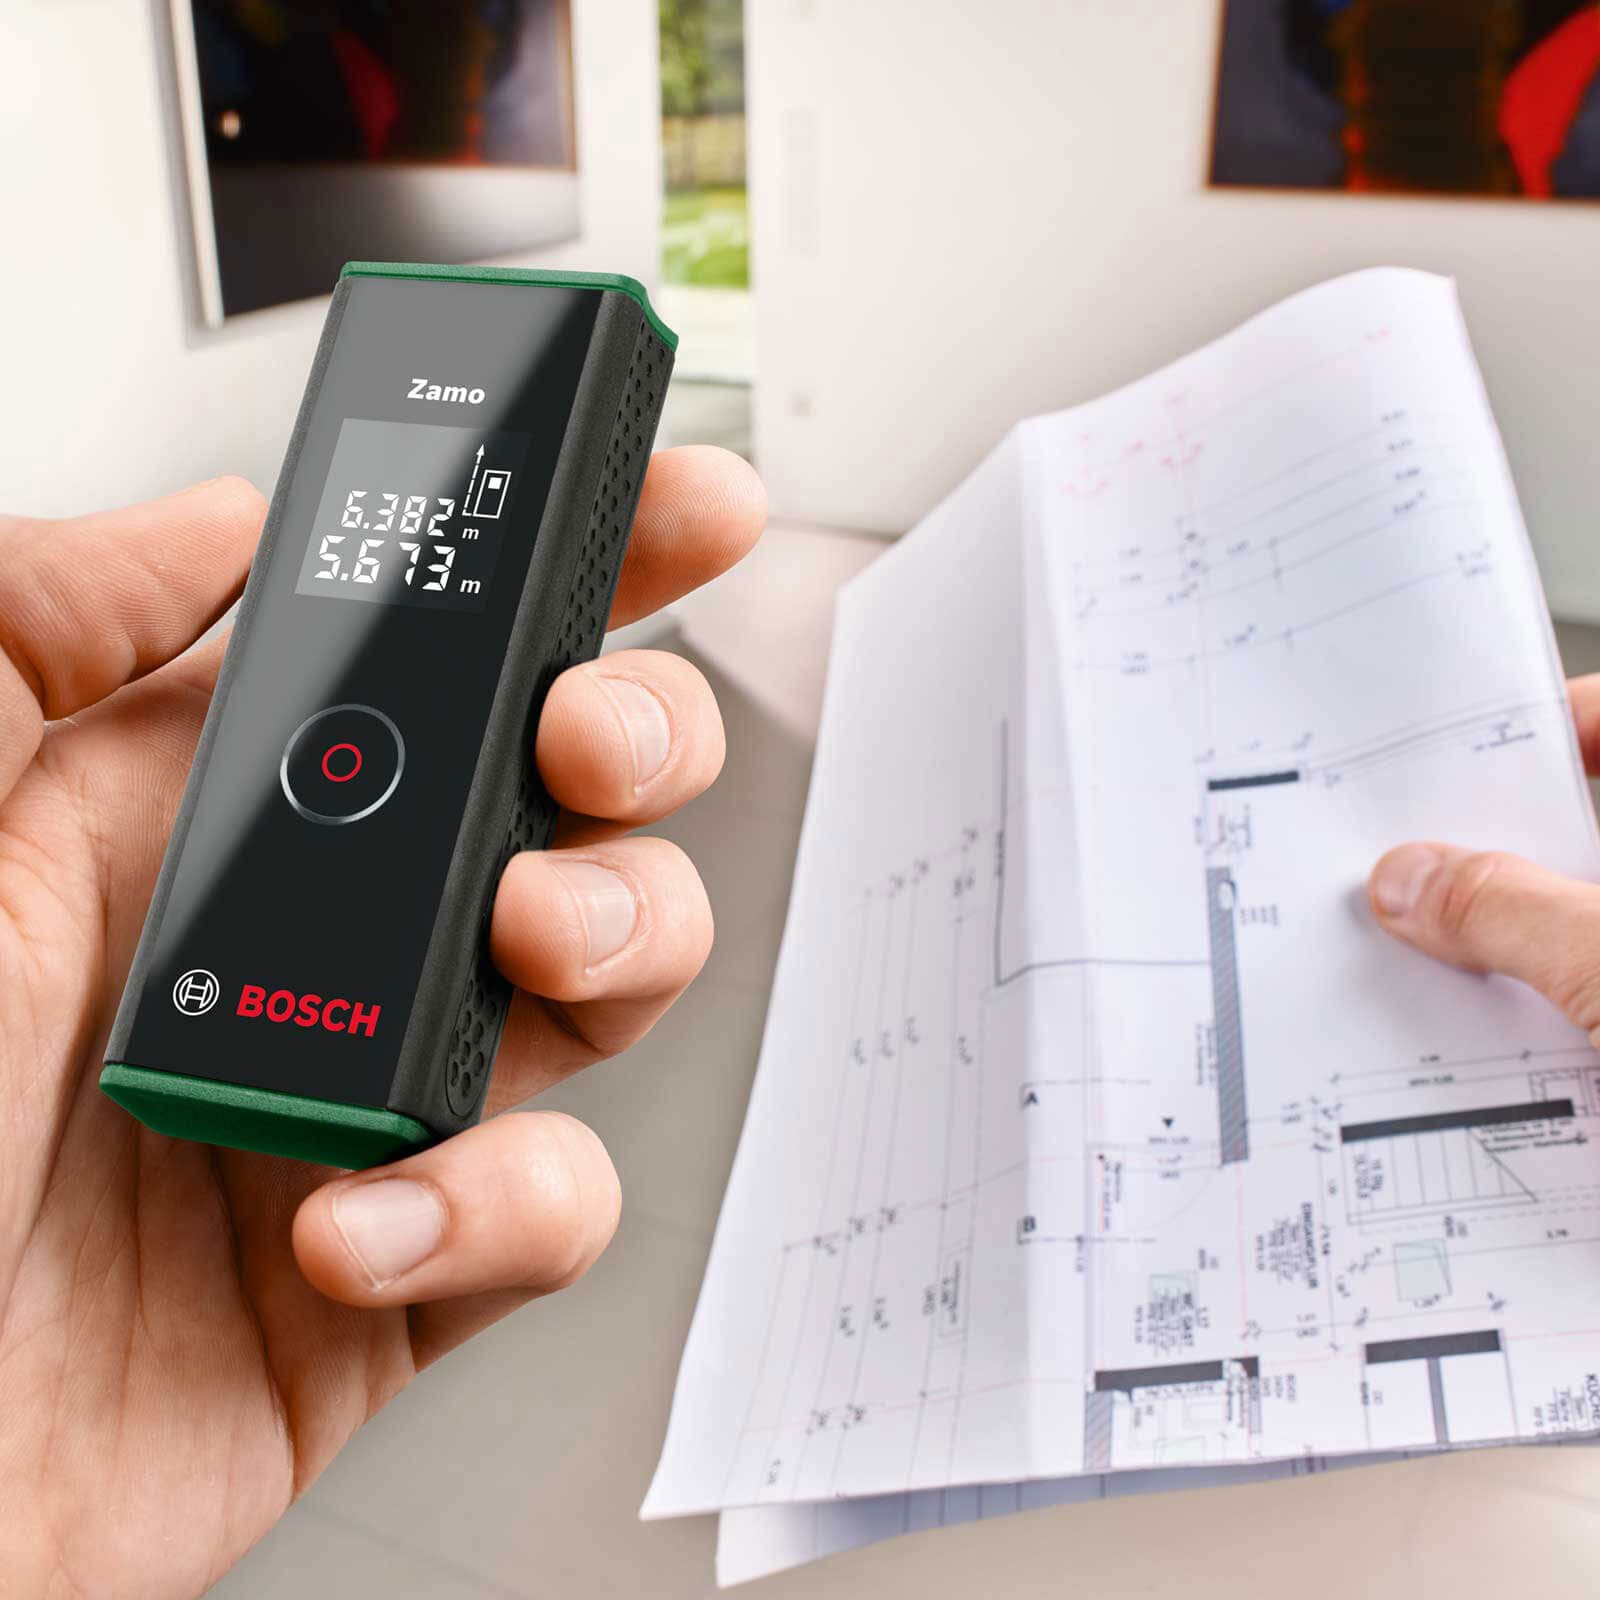 Bosch Digital Laser Measure - Zamo III 